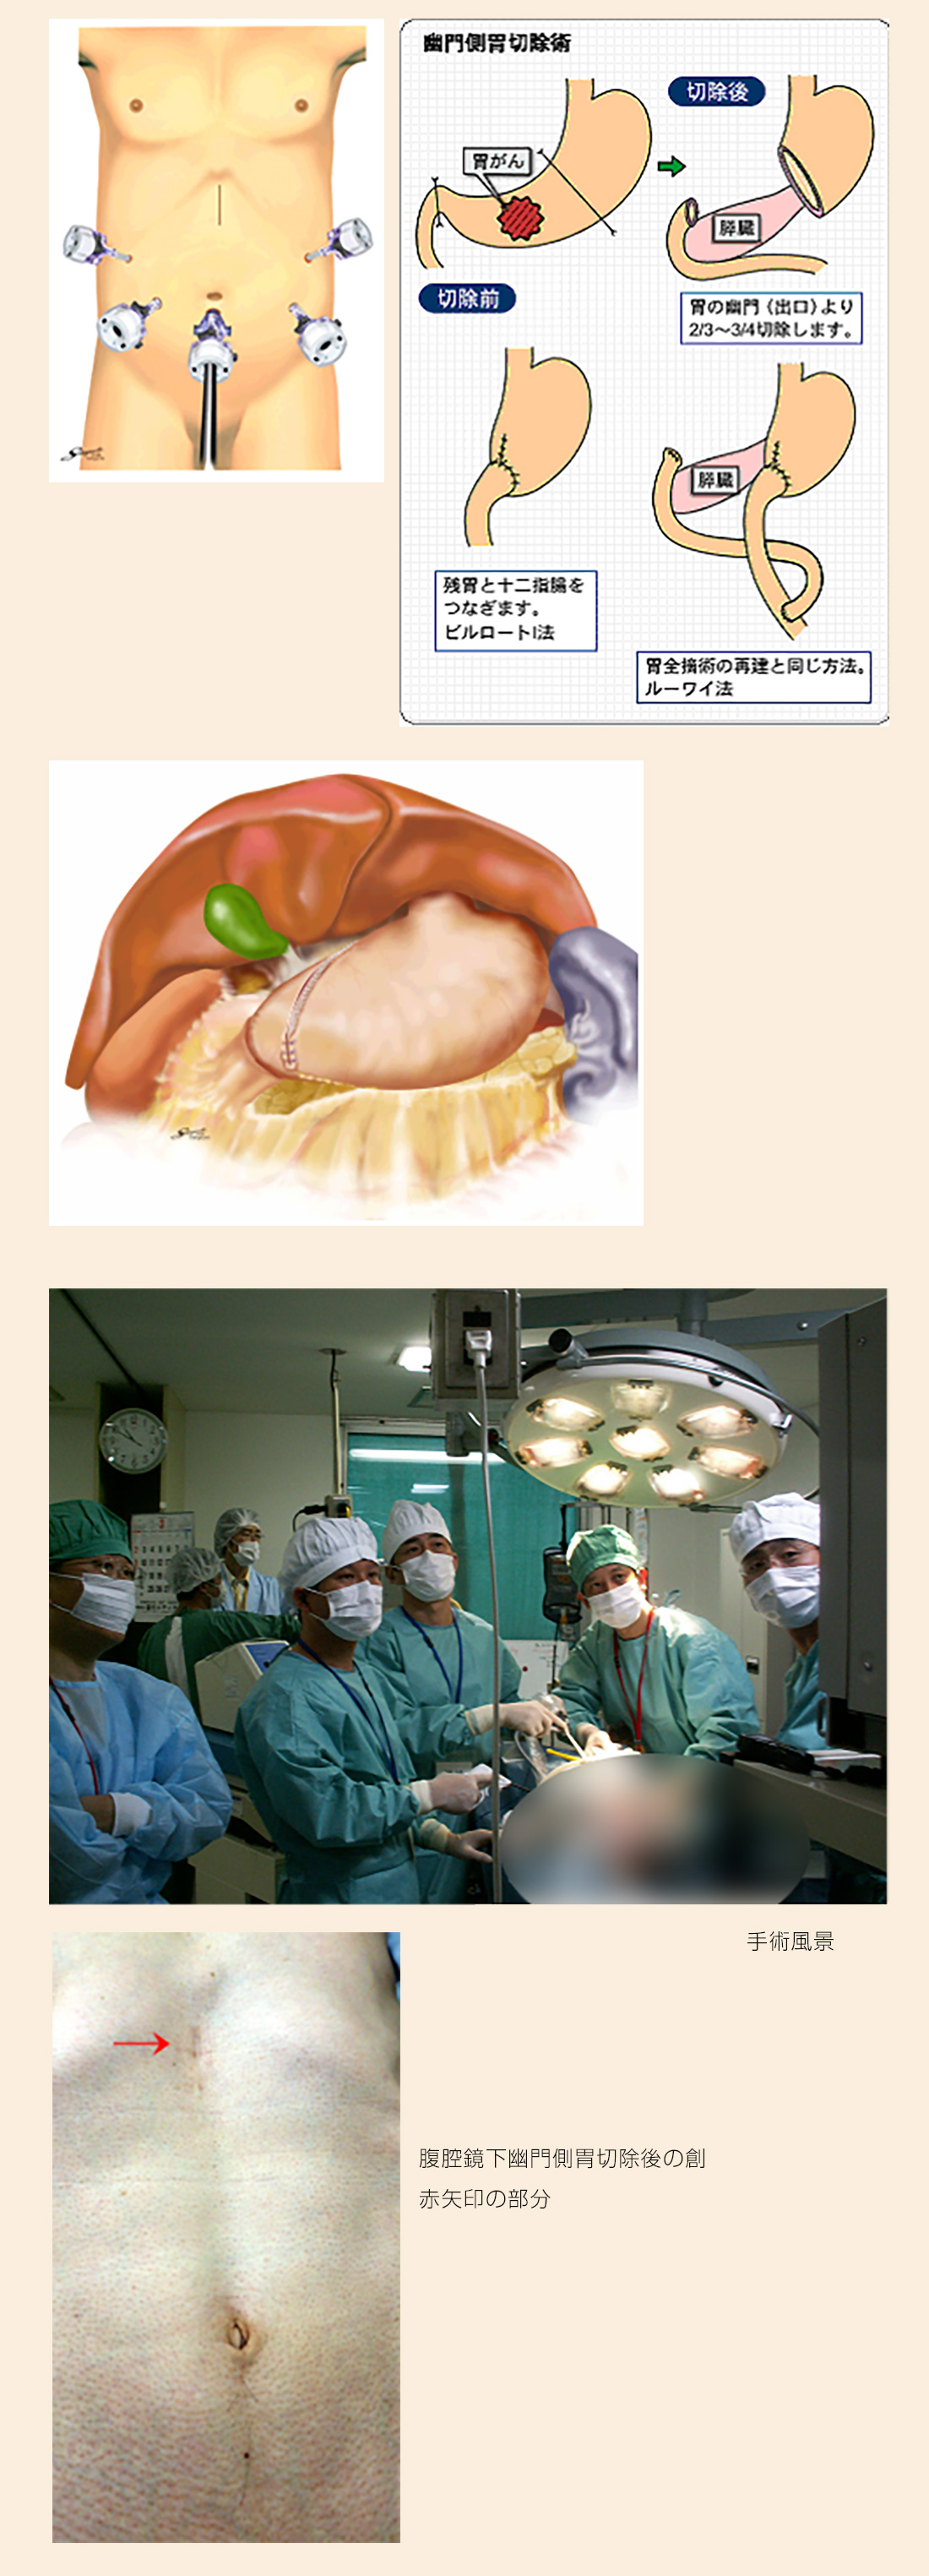 腹腔鏡下幽門側胃切除術